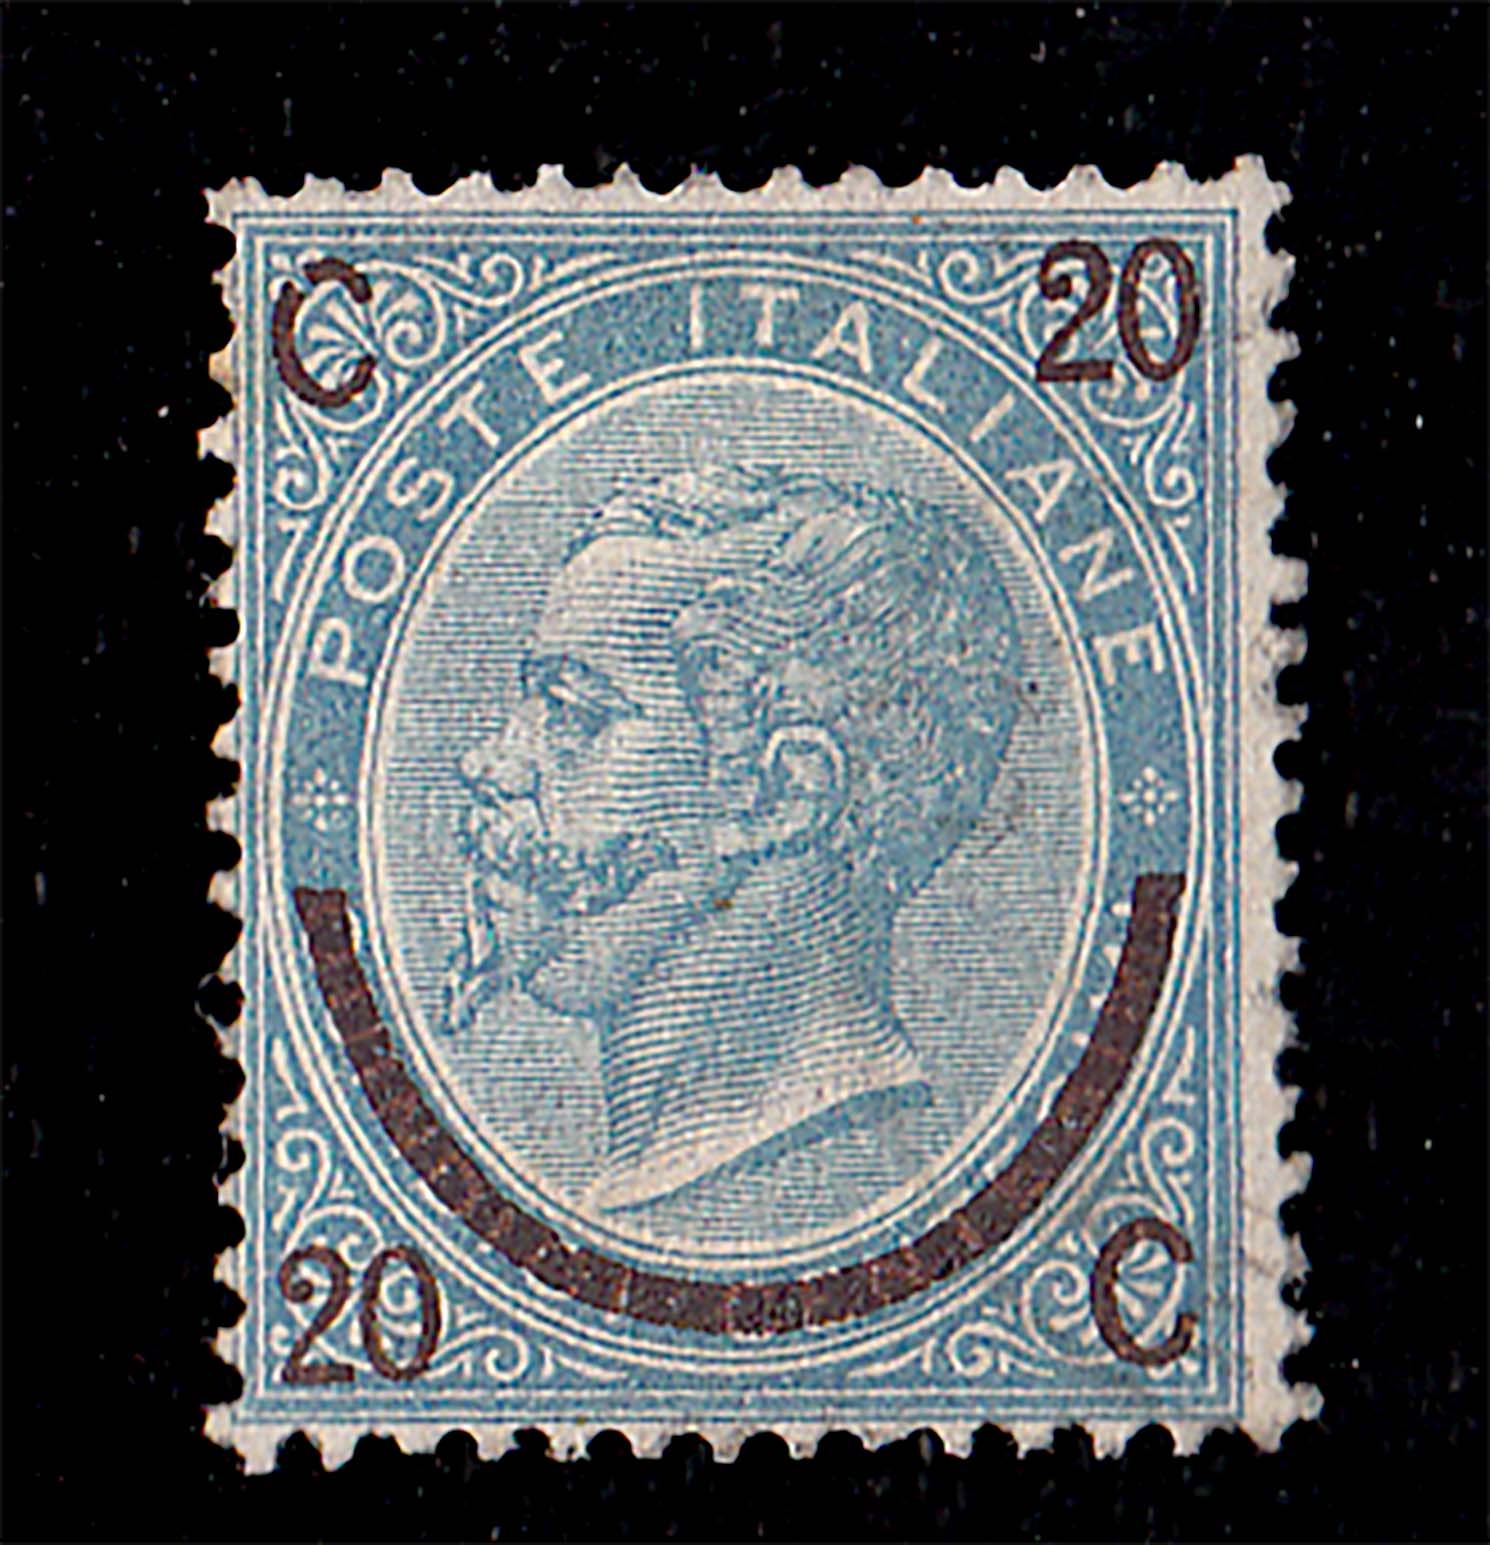 1865 - Vittorio Emanuele II francobollo stampato  De La Rue di Londra (Ferro Cavallo)